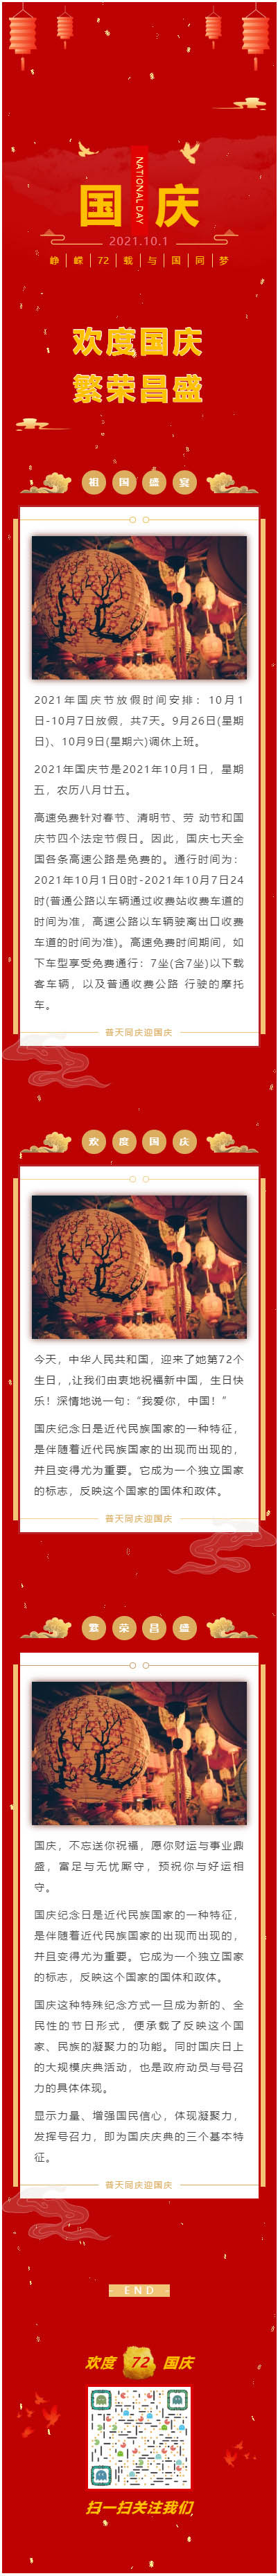 微信公众号模板中华人民共和国祝福新中国国庆纪念日生日快乐国庆节模板